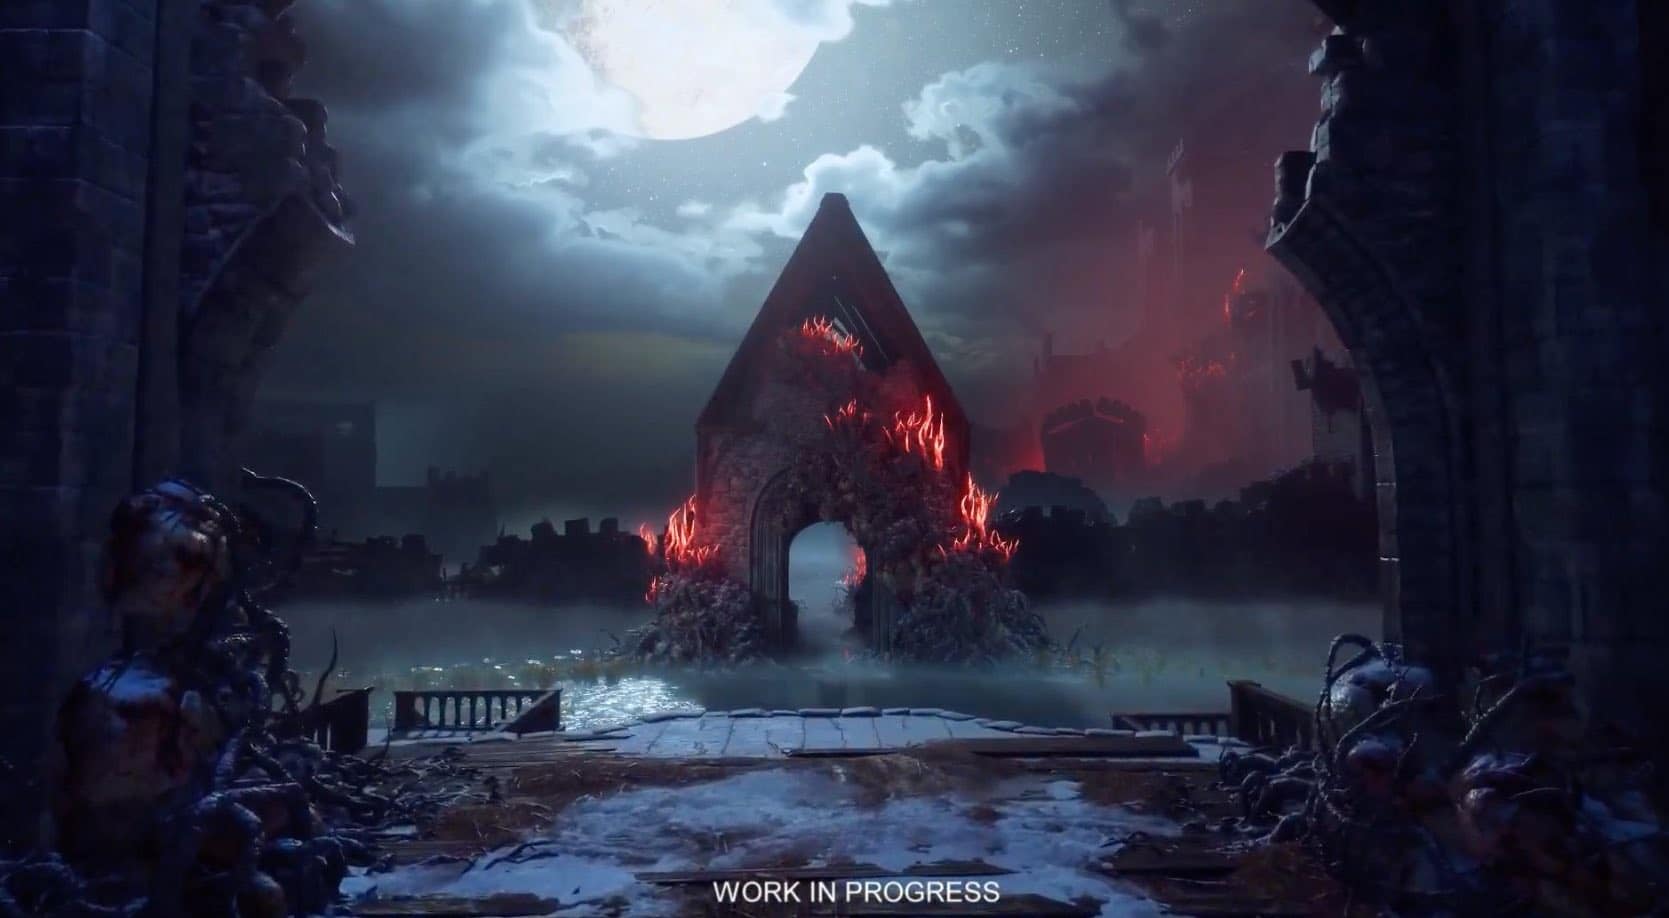 O novo projeto da Bioware Entertainment, que seria um Dragon Age 4, pode ter sido visto por alguns segundos na EA Play Live 2020.